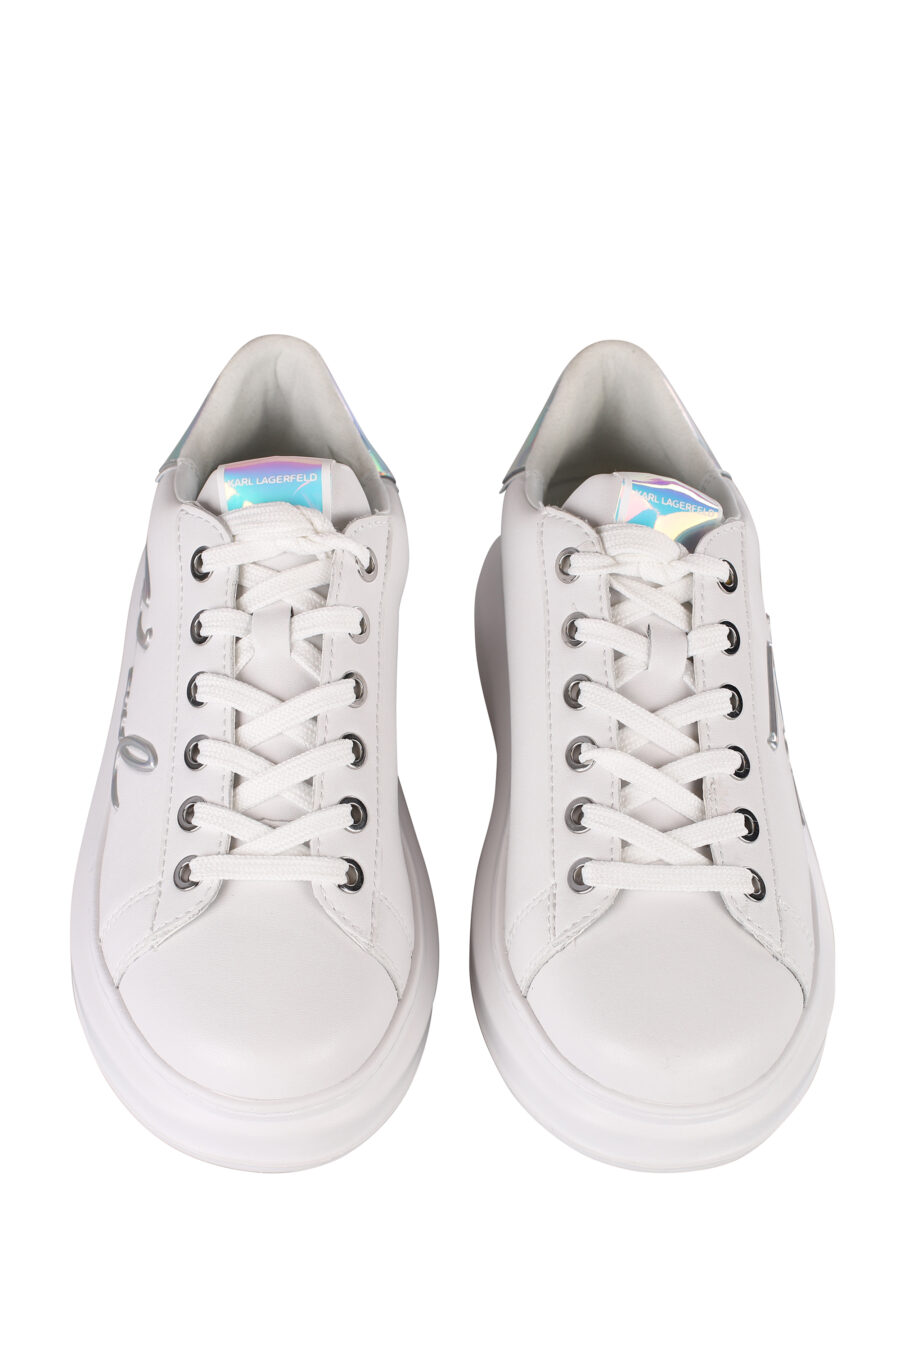 Zapatillas blancas con logo blanco y detalle tornasol - IMG 1400